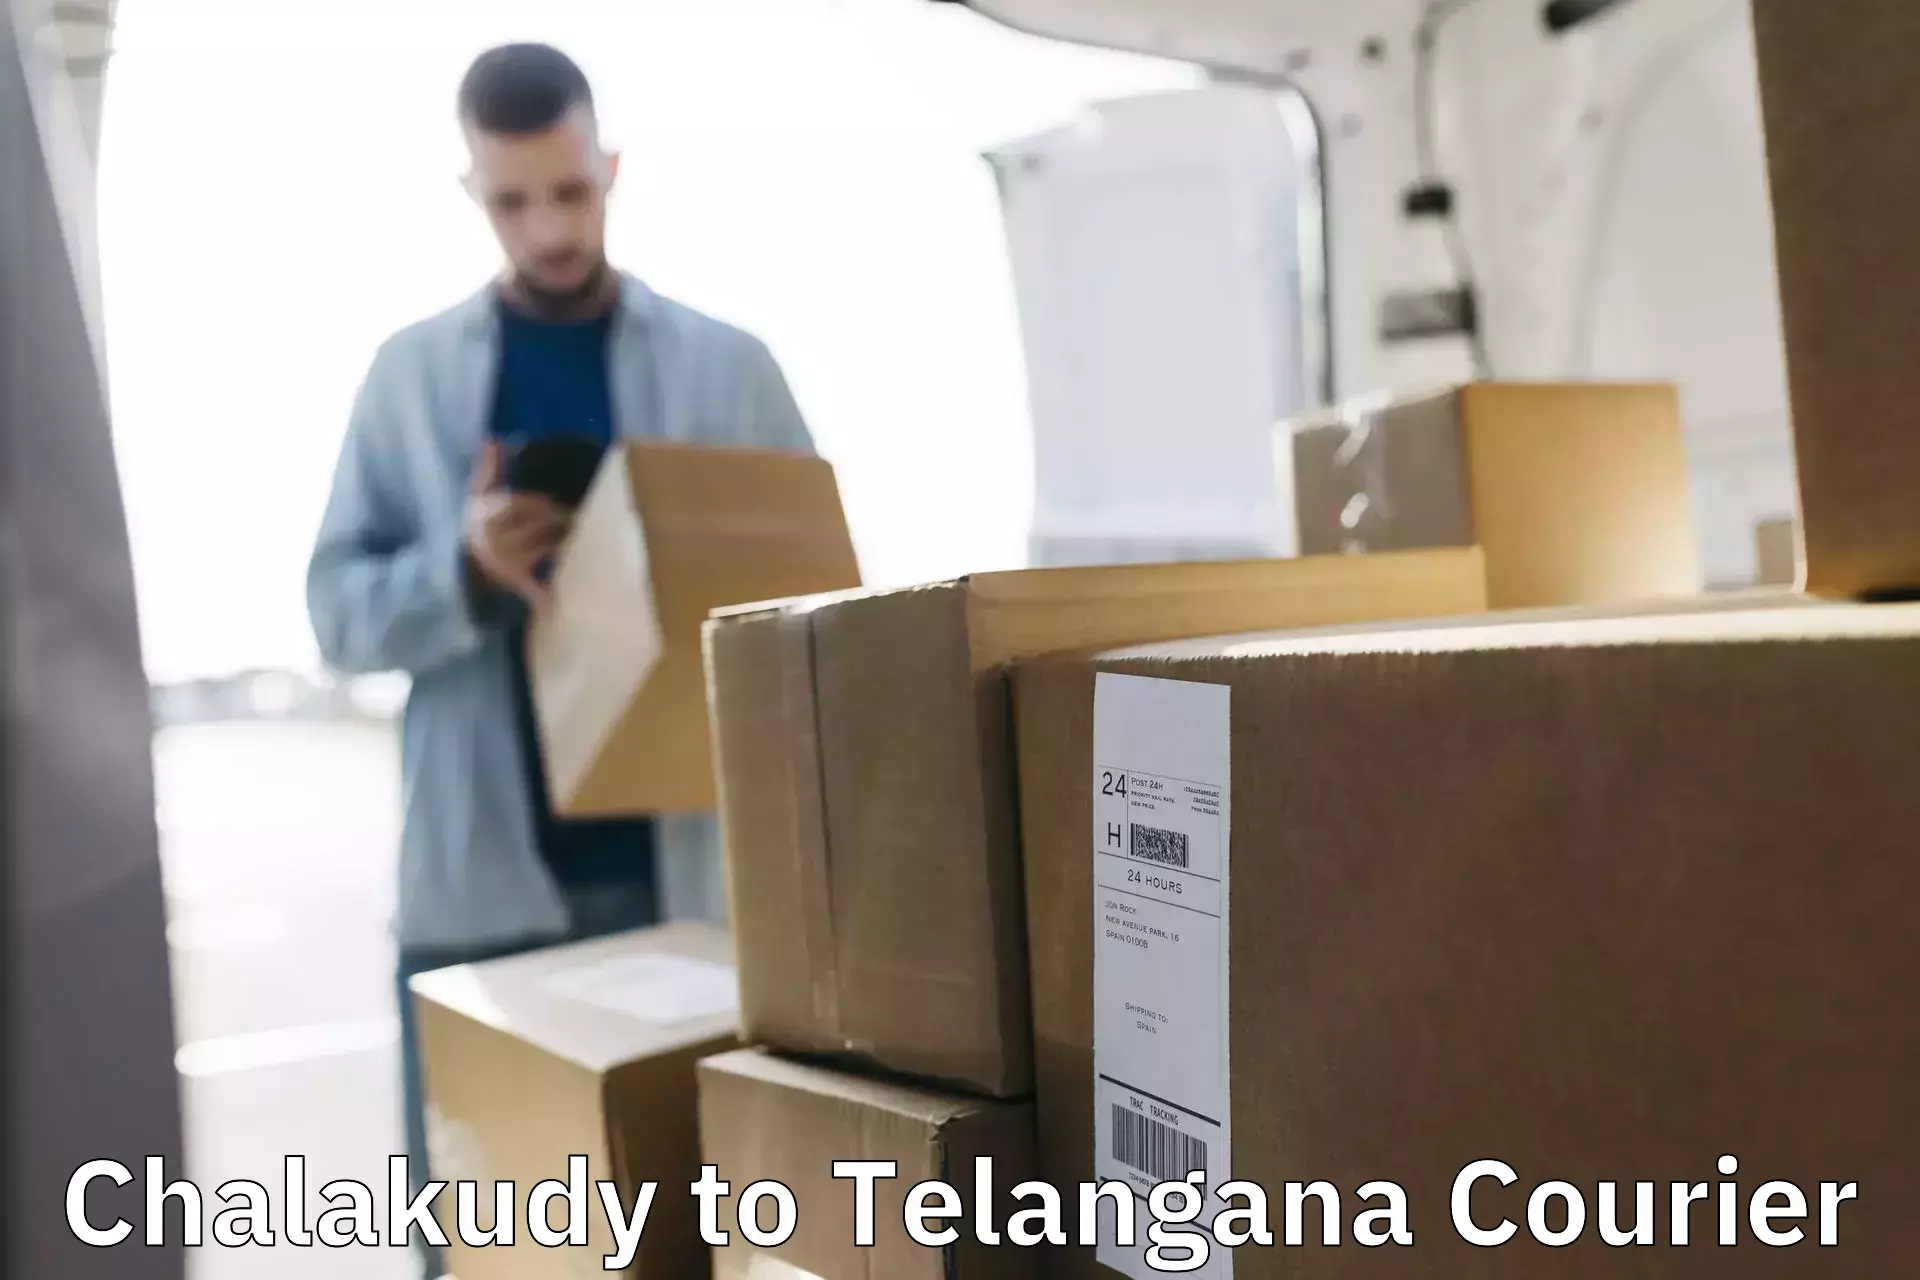 Professional courier handling Chalakudy to Jogulamba Gadwal